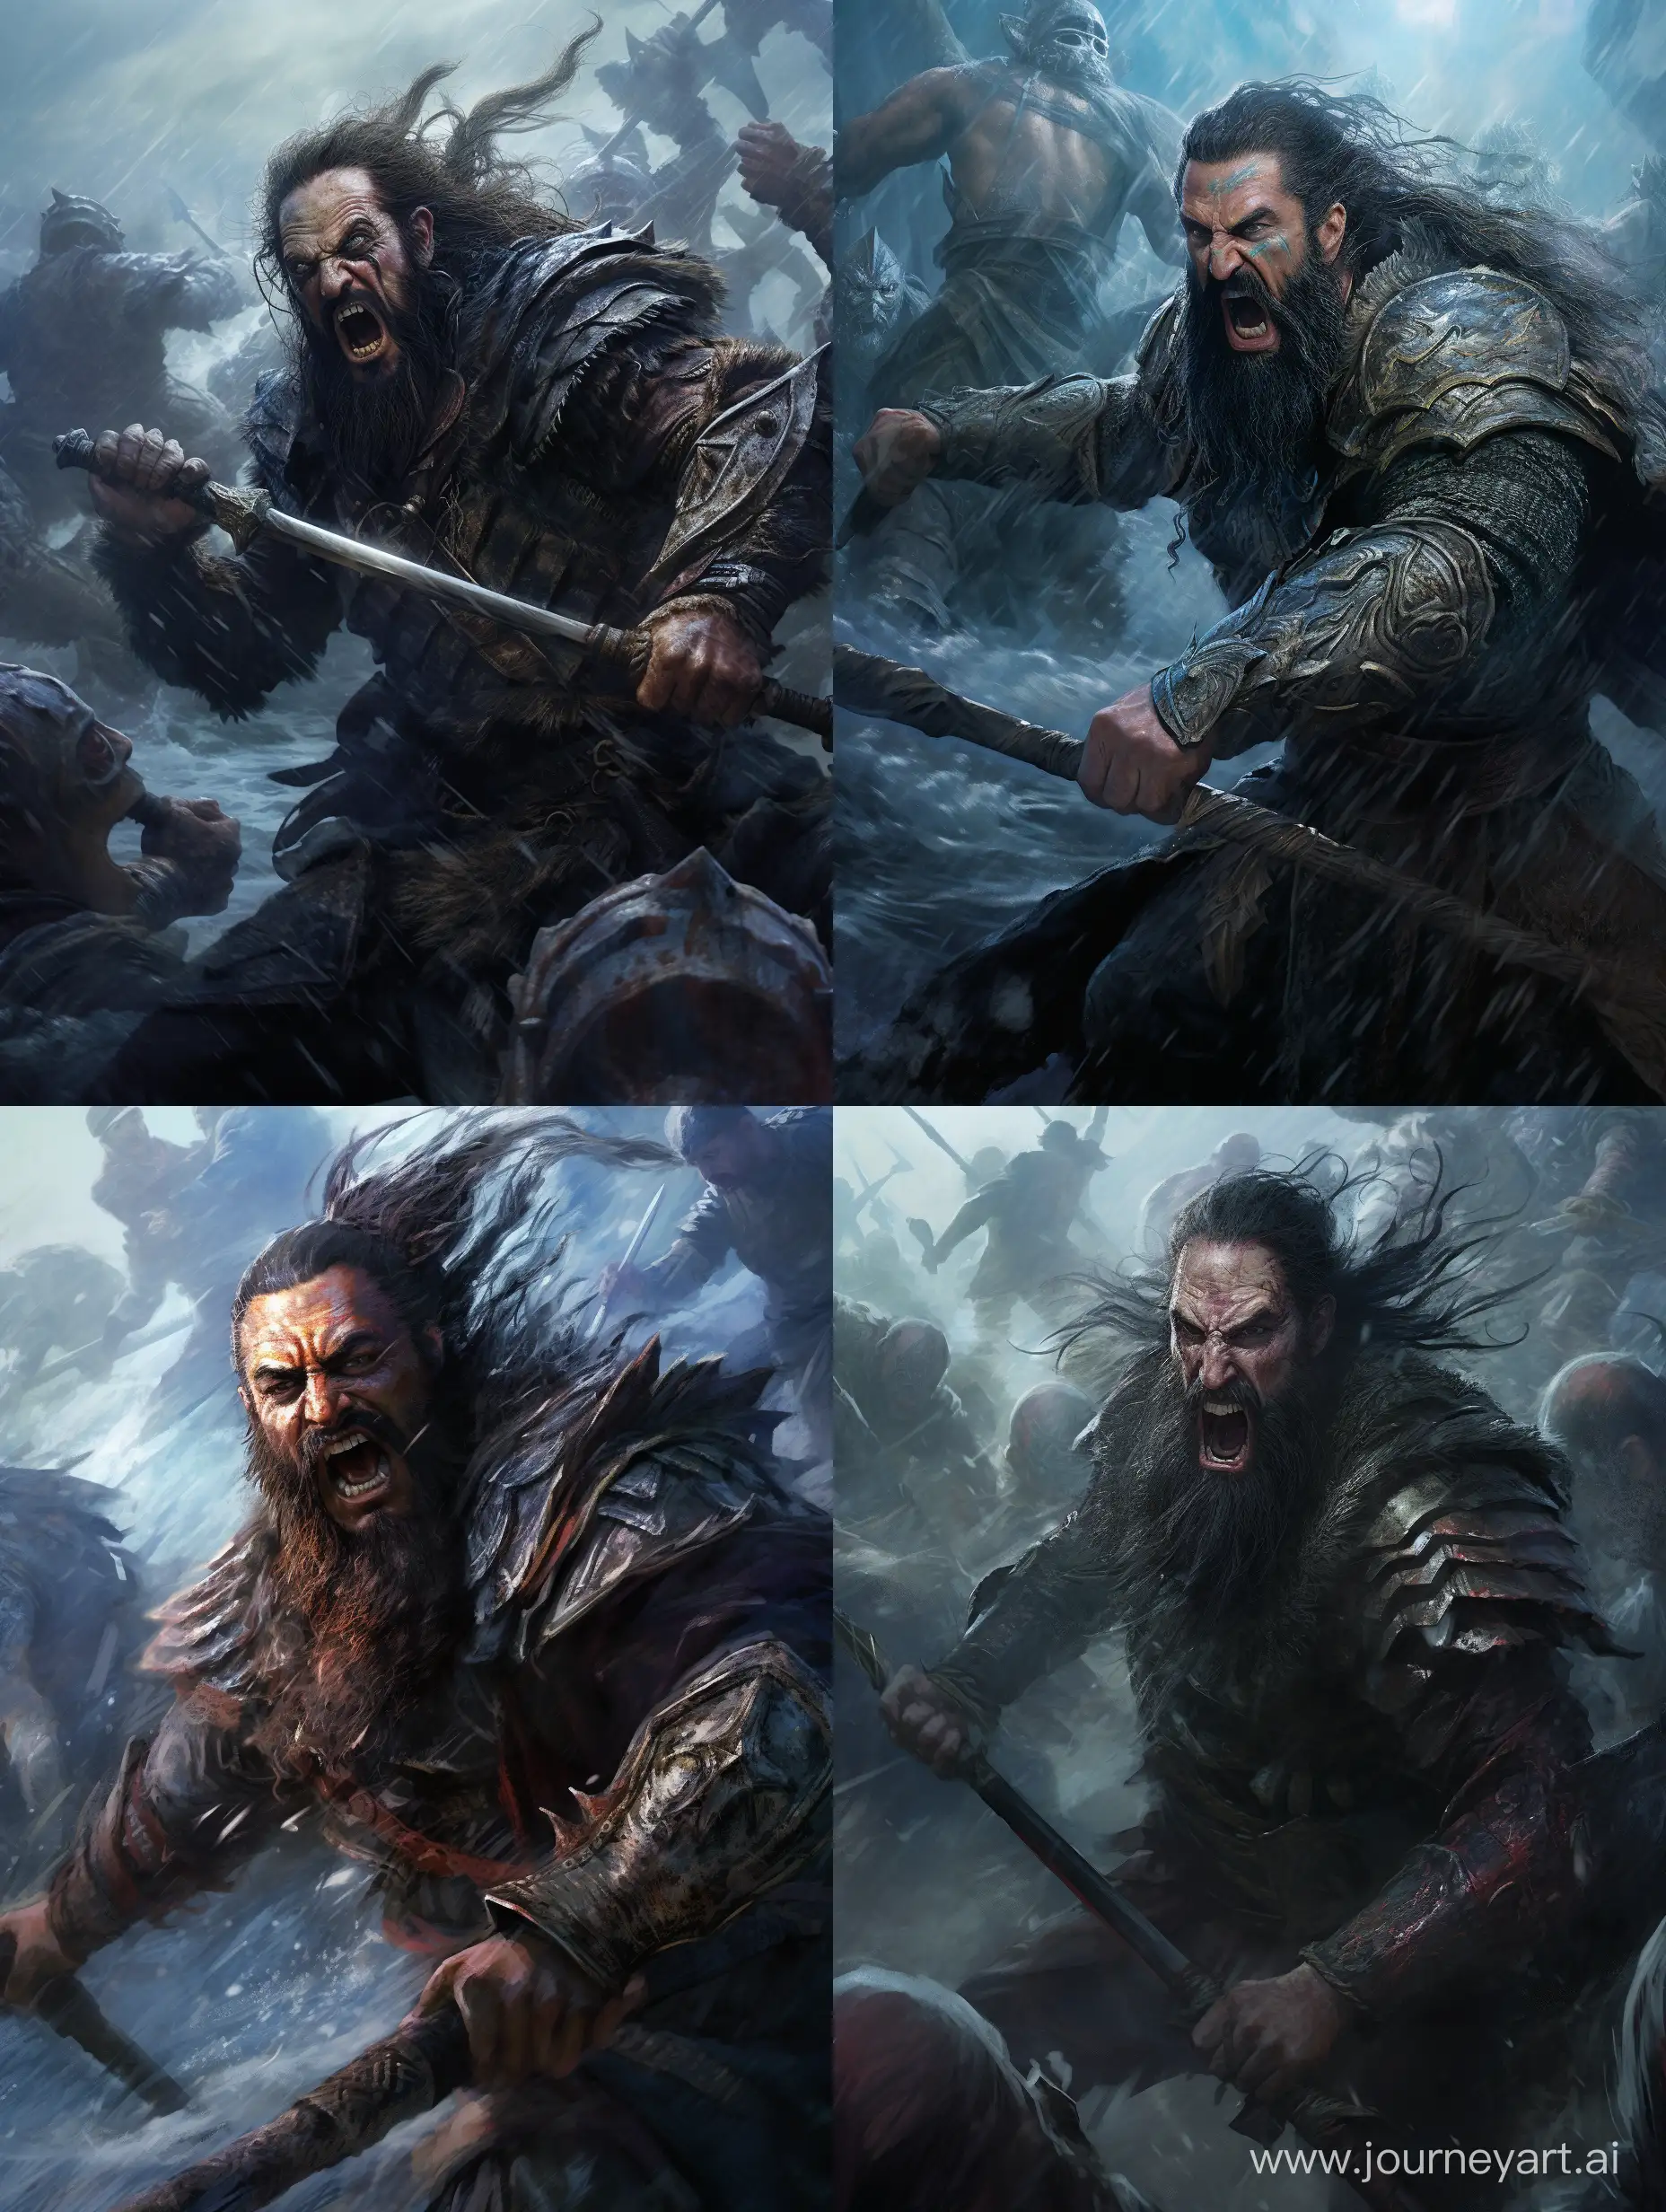 Blackbeards-Fierce-Naval-Assault-HyperRealistic-Pirate-Battle-Scene